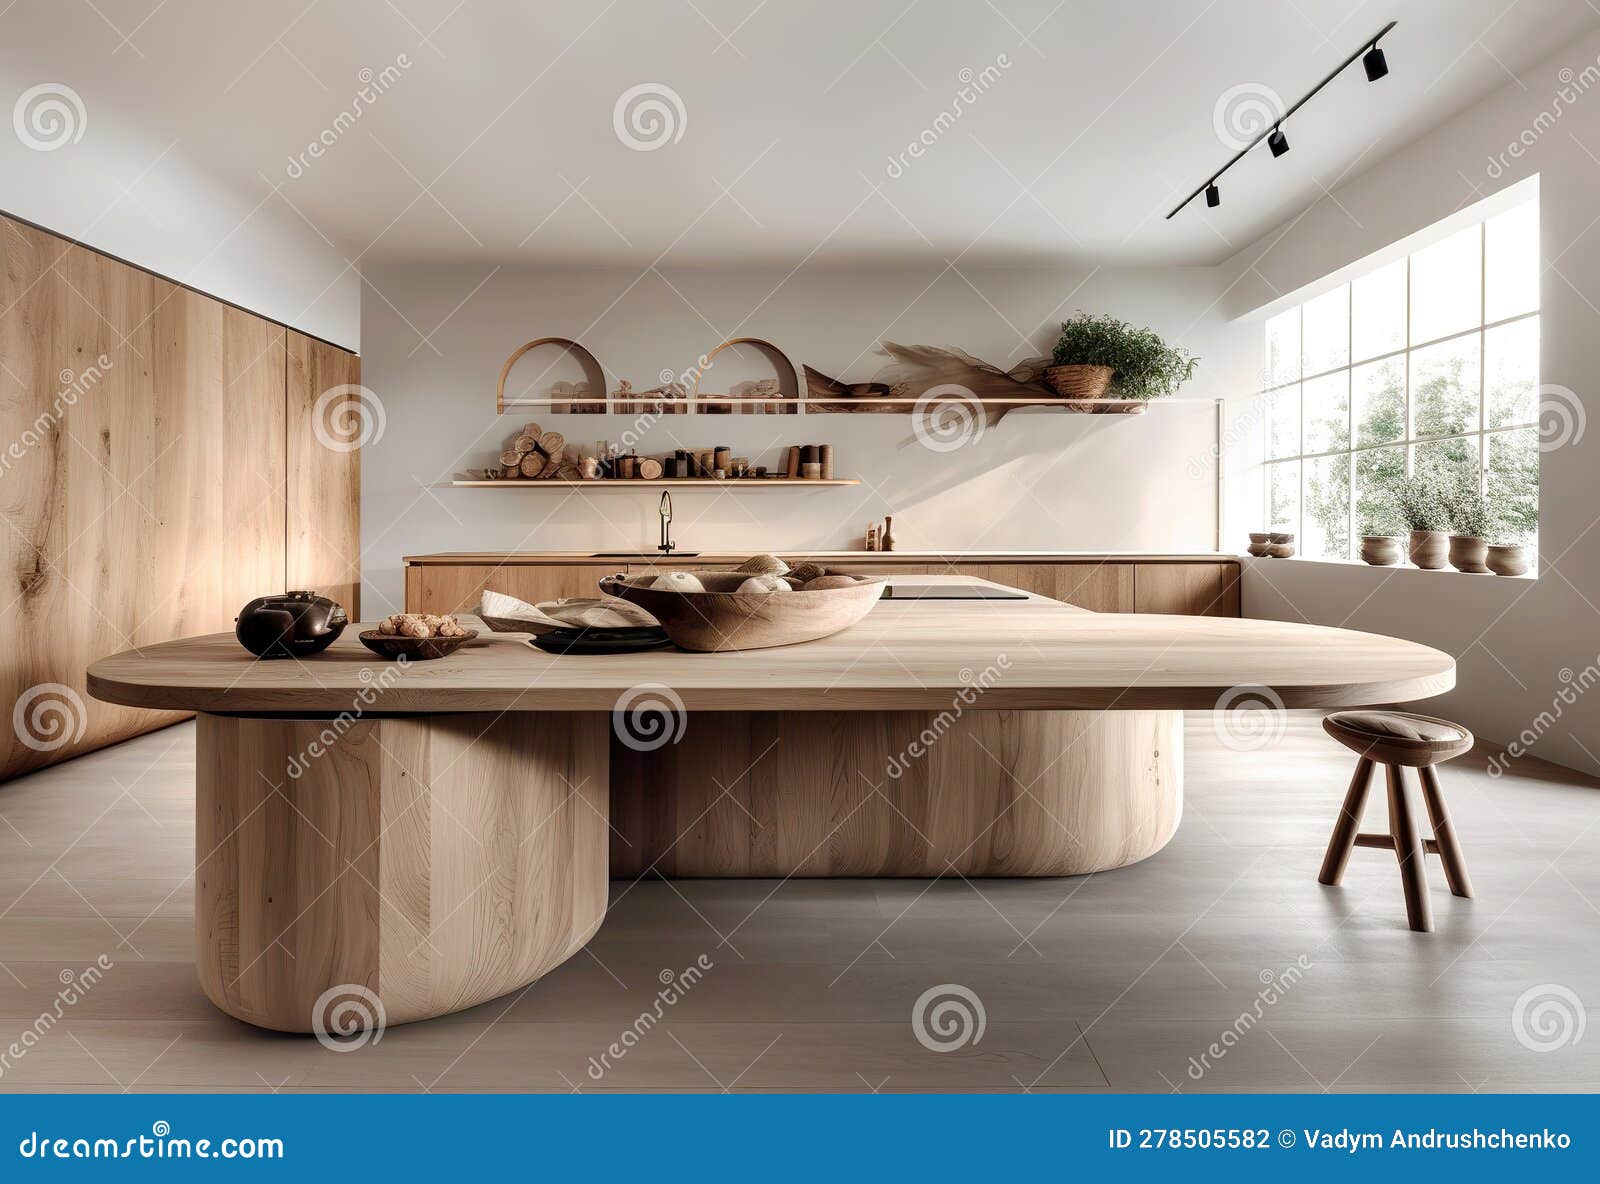 Mesa redonda con encimera en madera maciza de estilo nórdico en